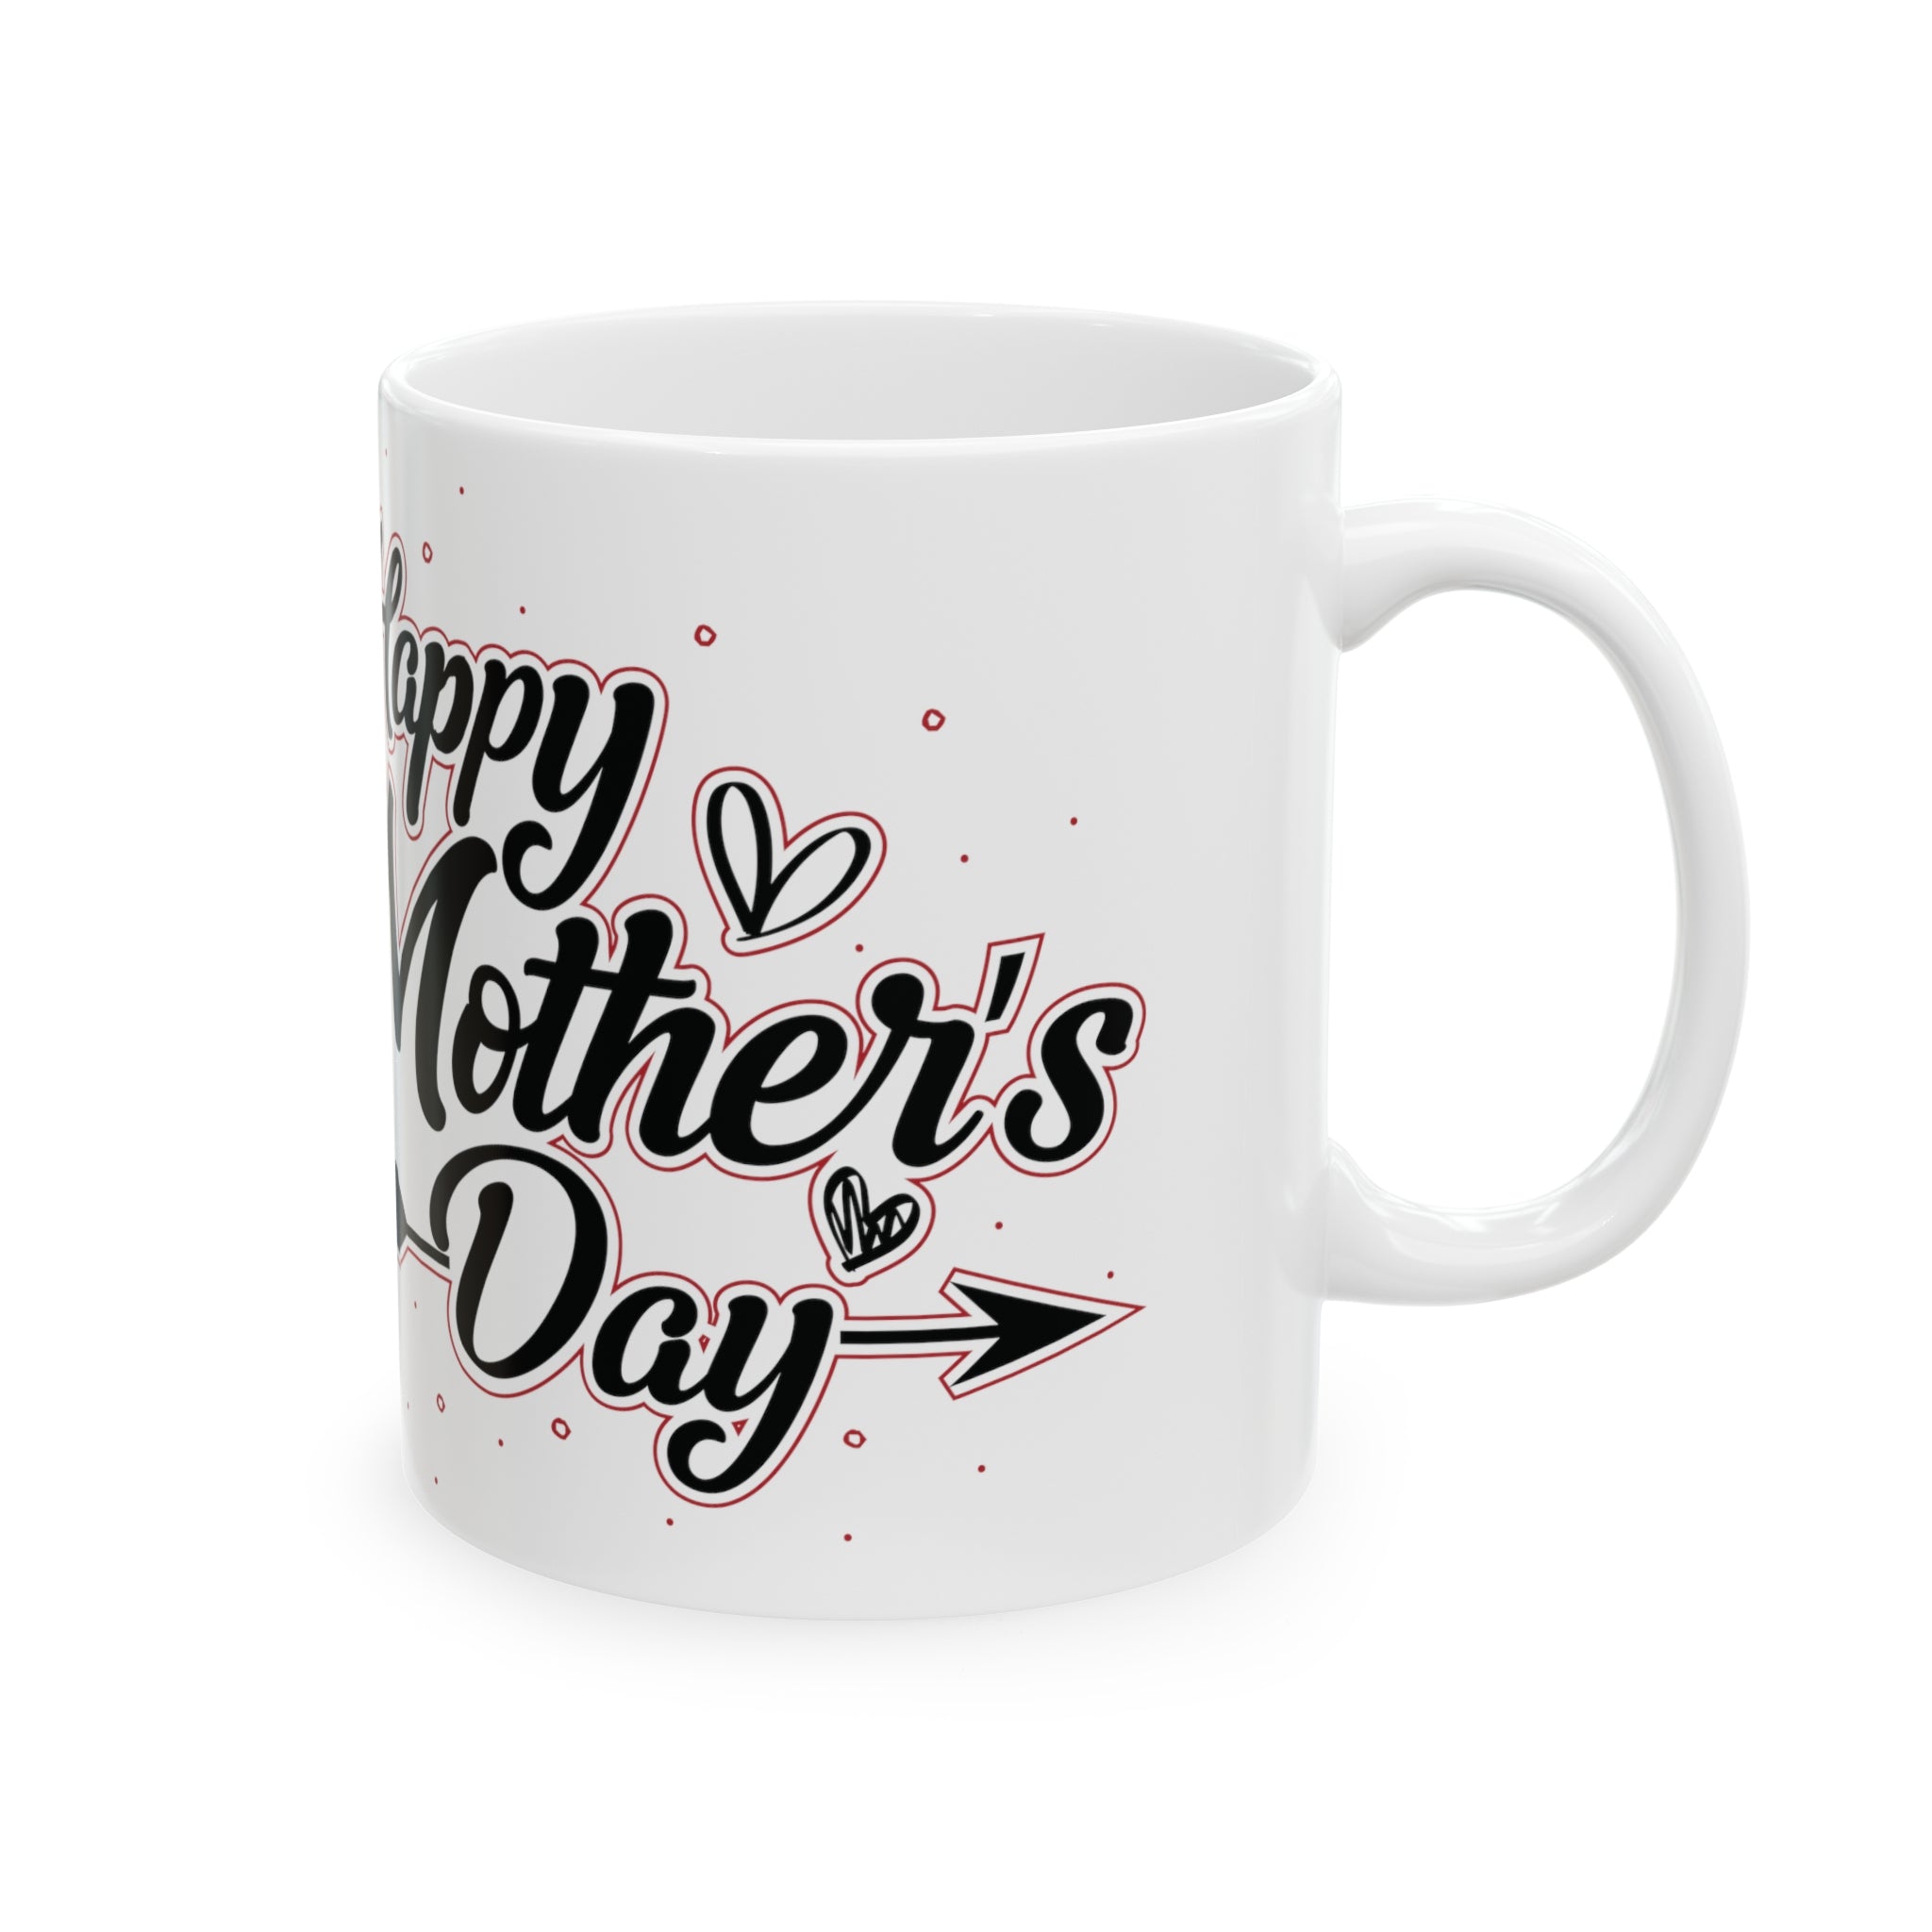 Happy Mother's Day Ceramic Mug, 11oz